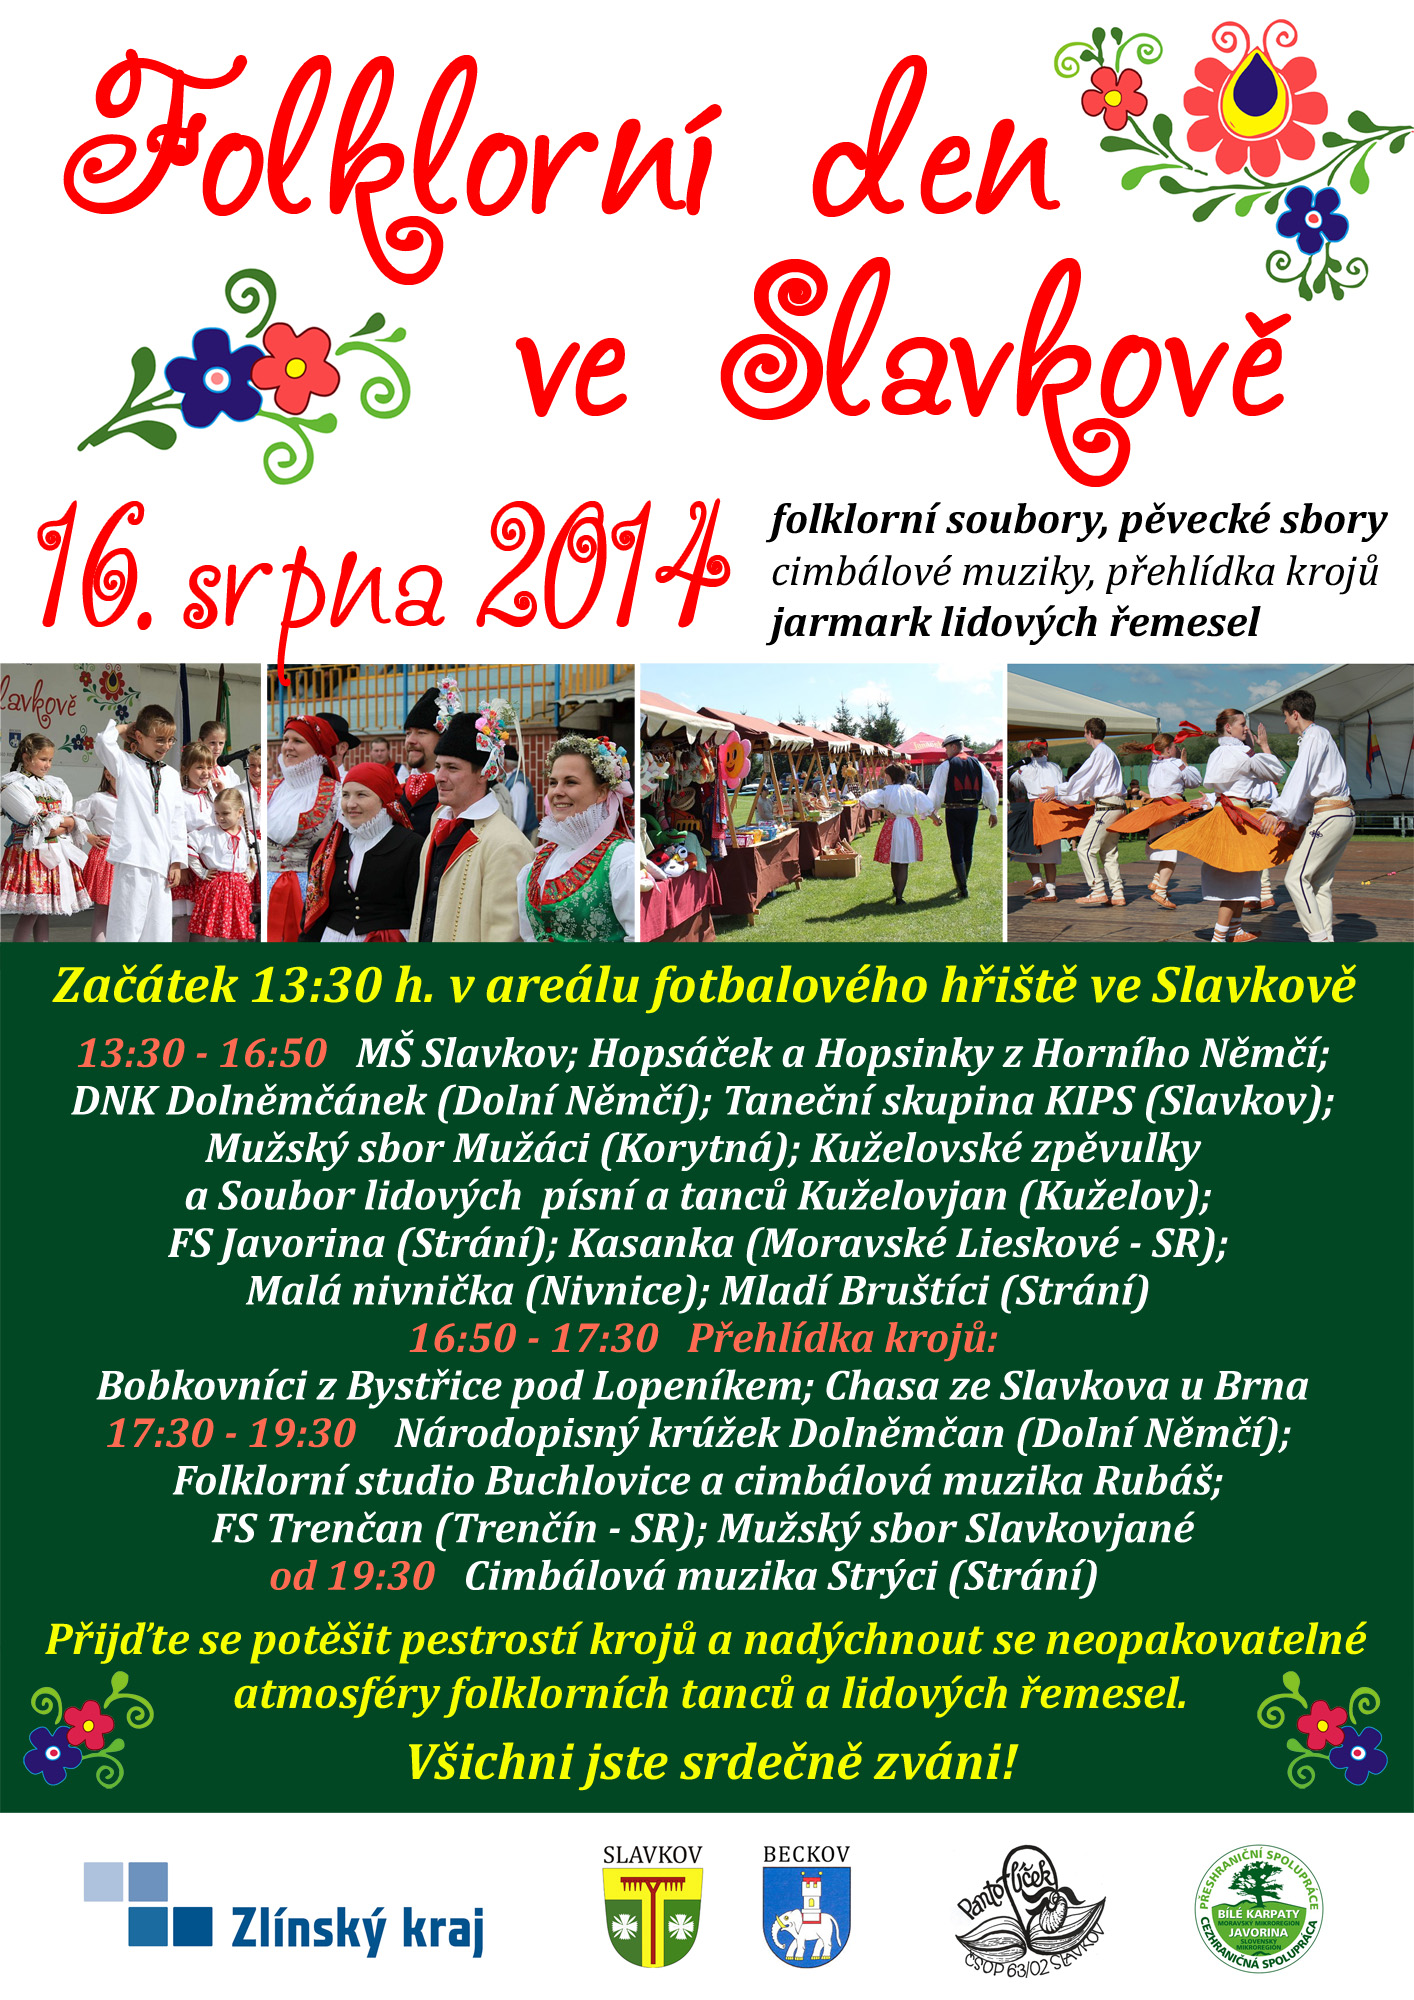 Folklorní den ve Slavkově 2014 - 4. ročník